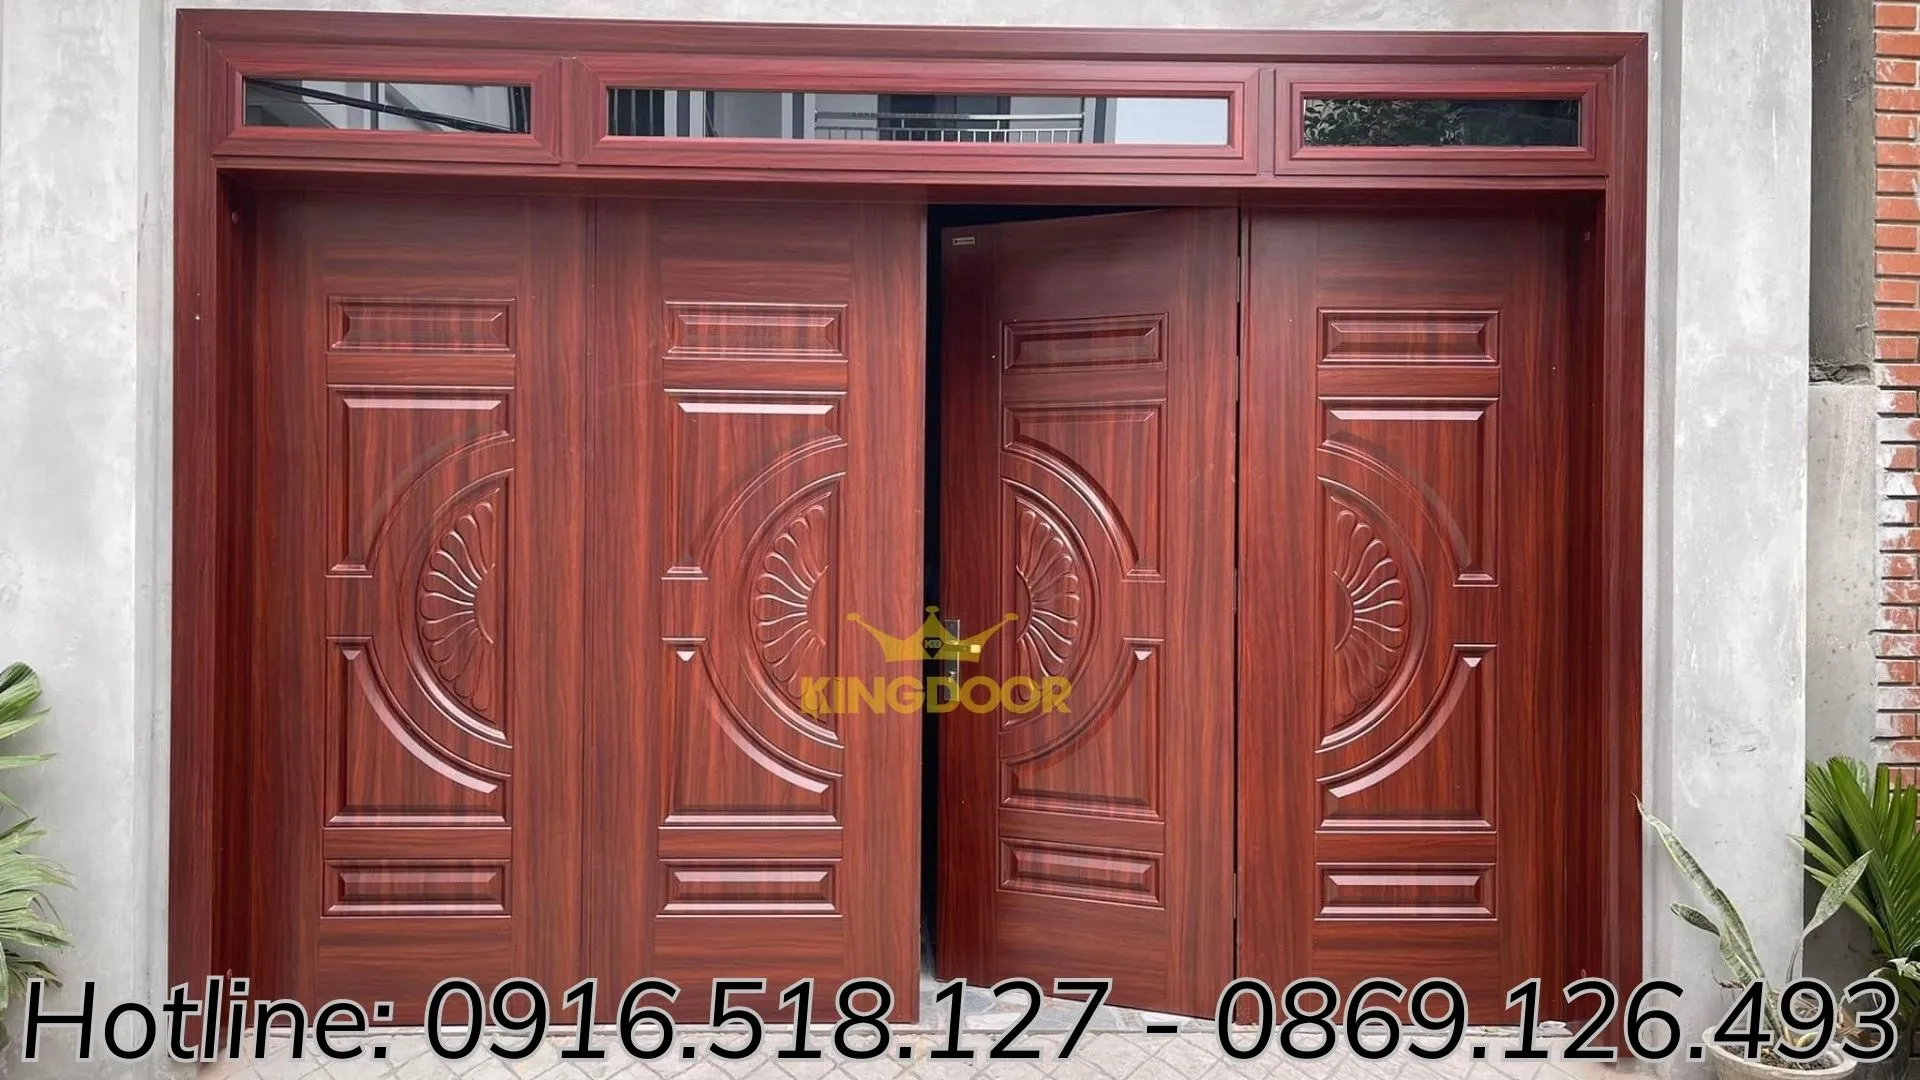 Báo giá cửa thép vân gỗ tại Di Linh Lâm Đồng